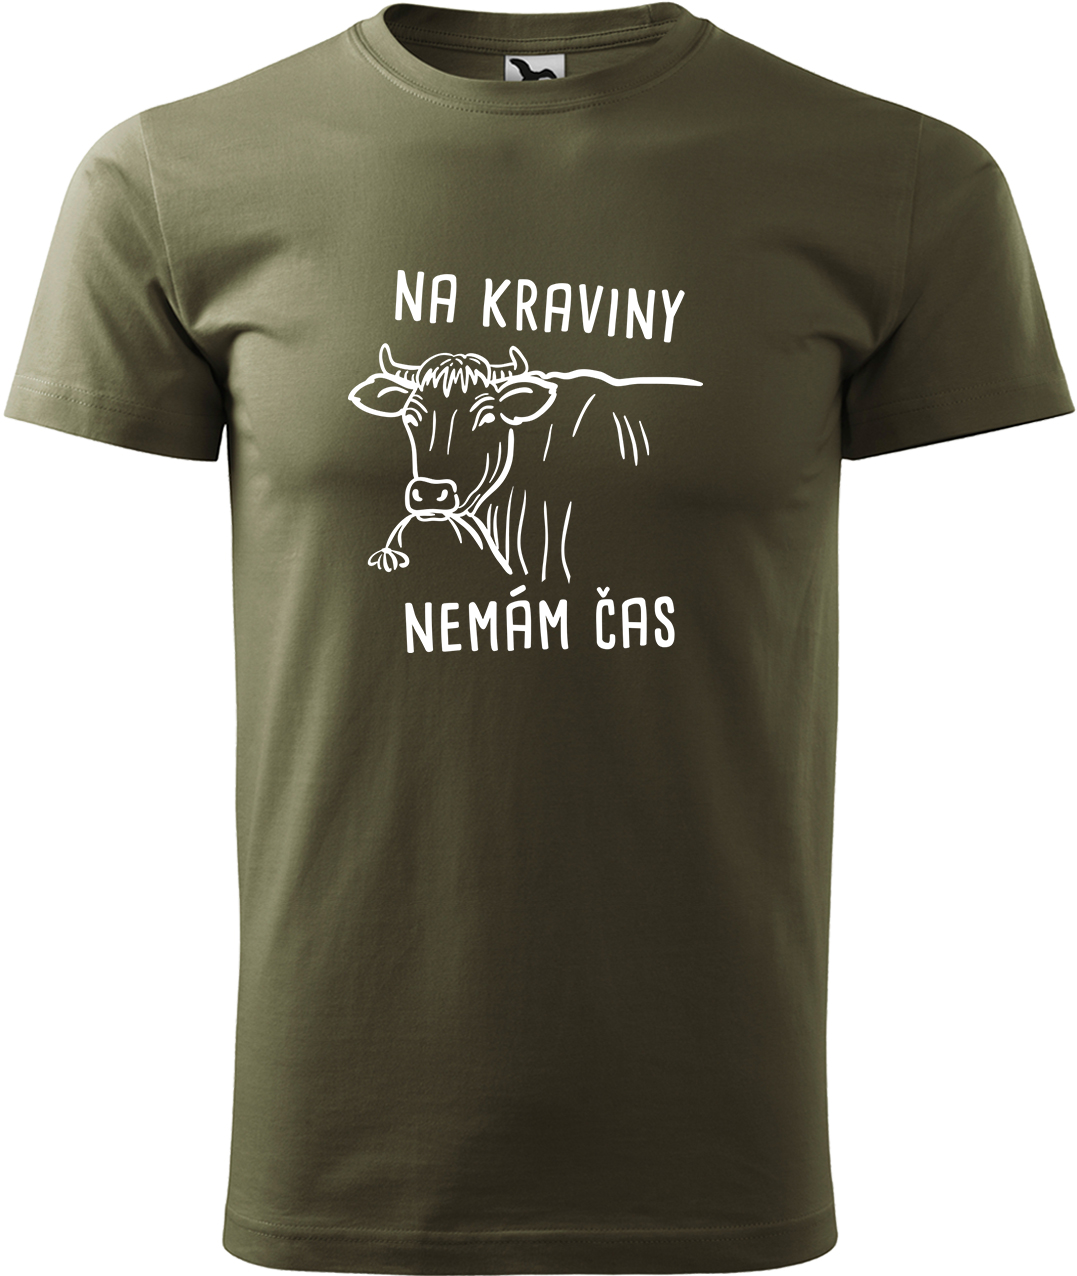 Pánské tričko s krávou - Na kraviny nemám čas Velikost: 3XL, Barva: Military (69), Střih: pánský